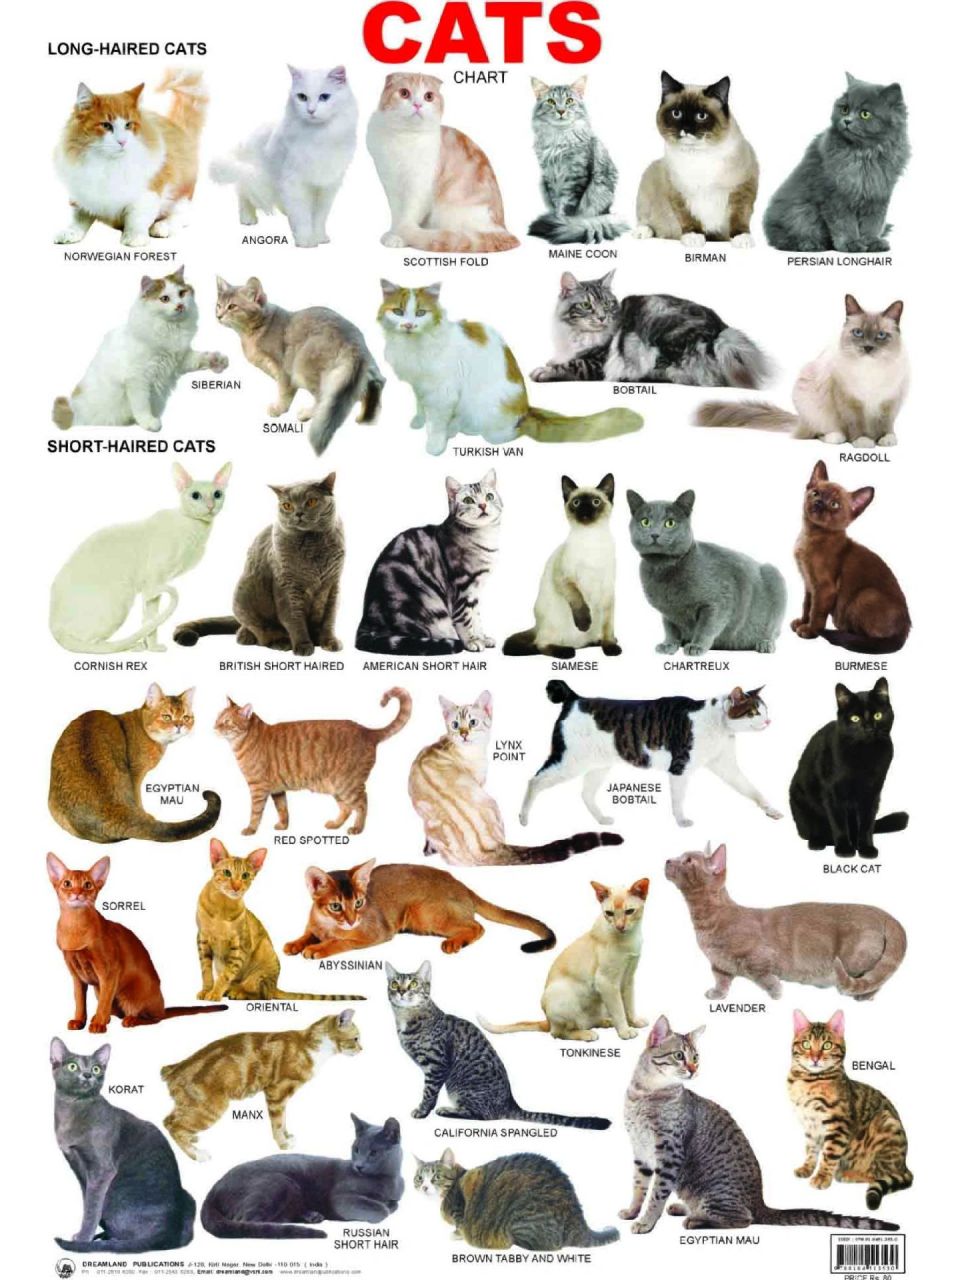 所有猫的品种加照片图片